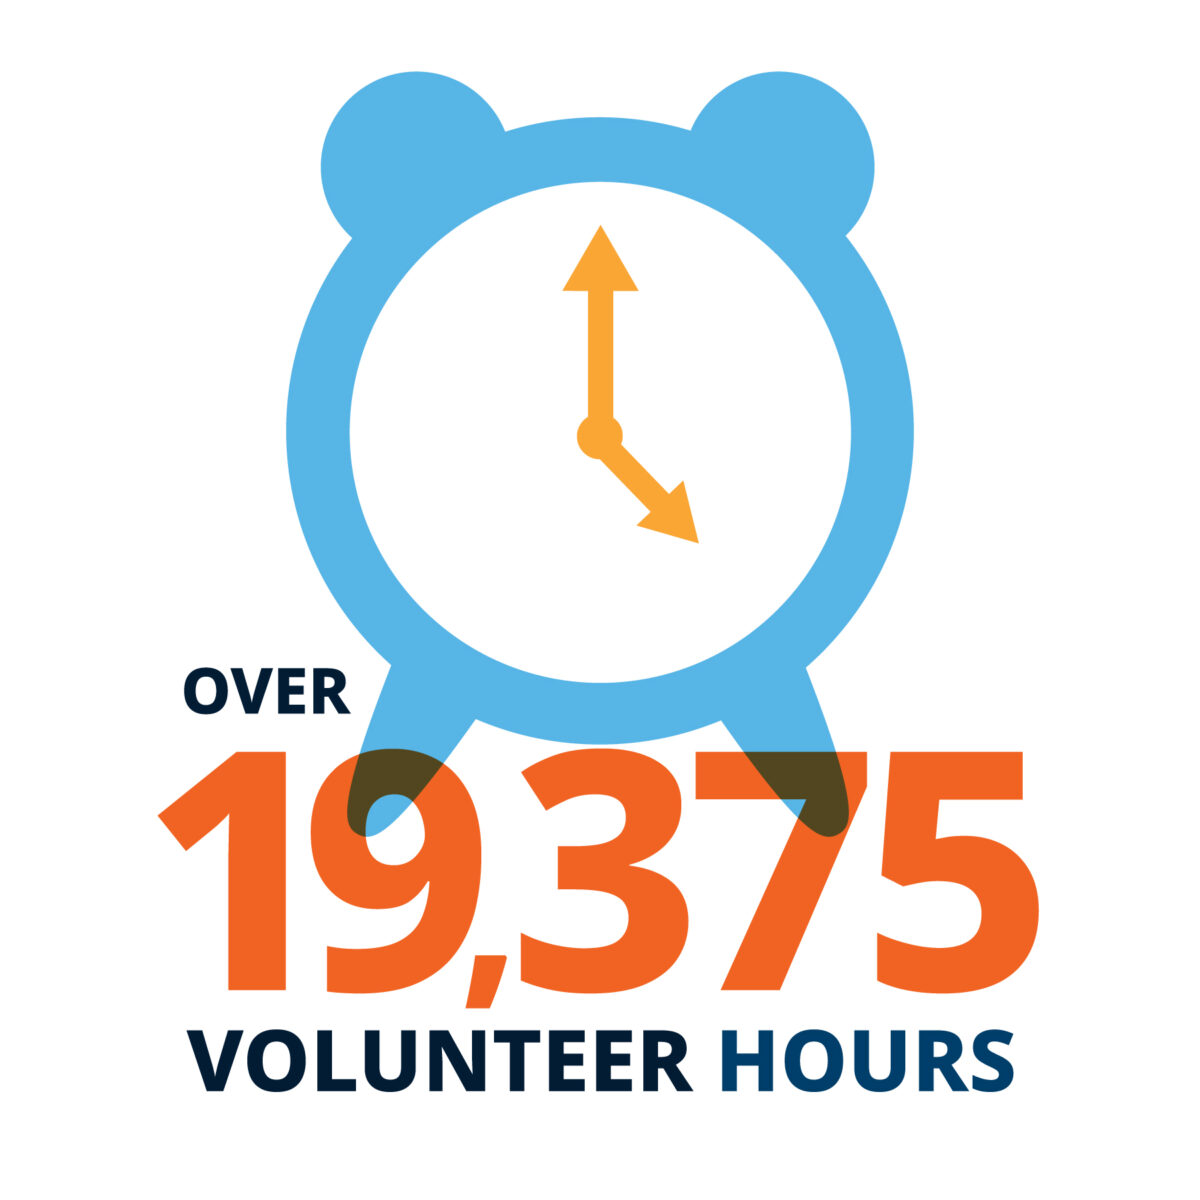 Over 19.375 volunteer hours.